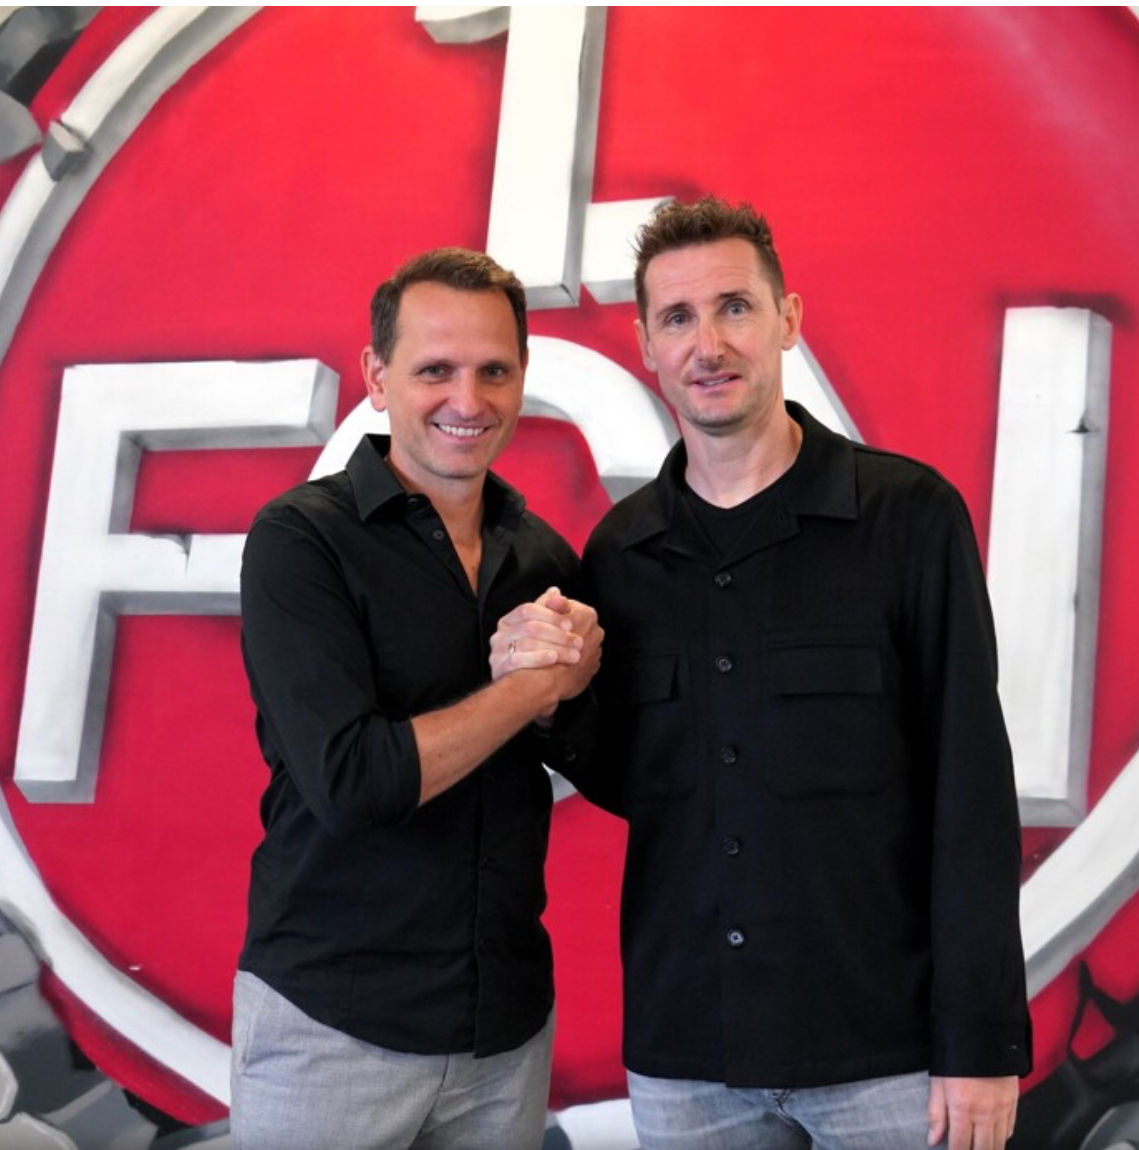 OFFICIAL: Klose is the new manager of Bundesliga 2 side, FC Nürnberg